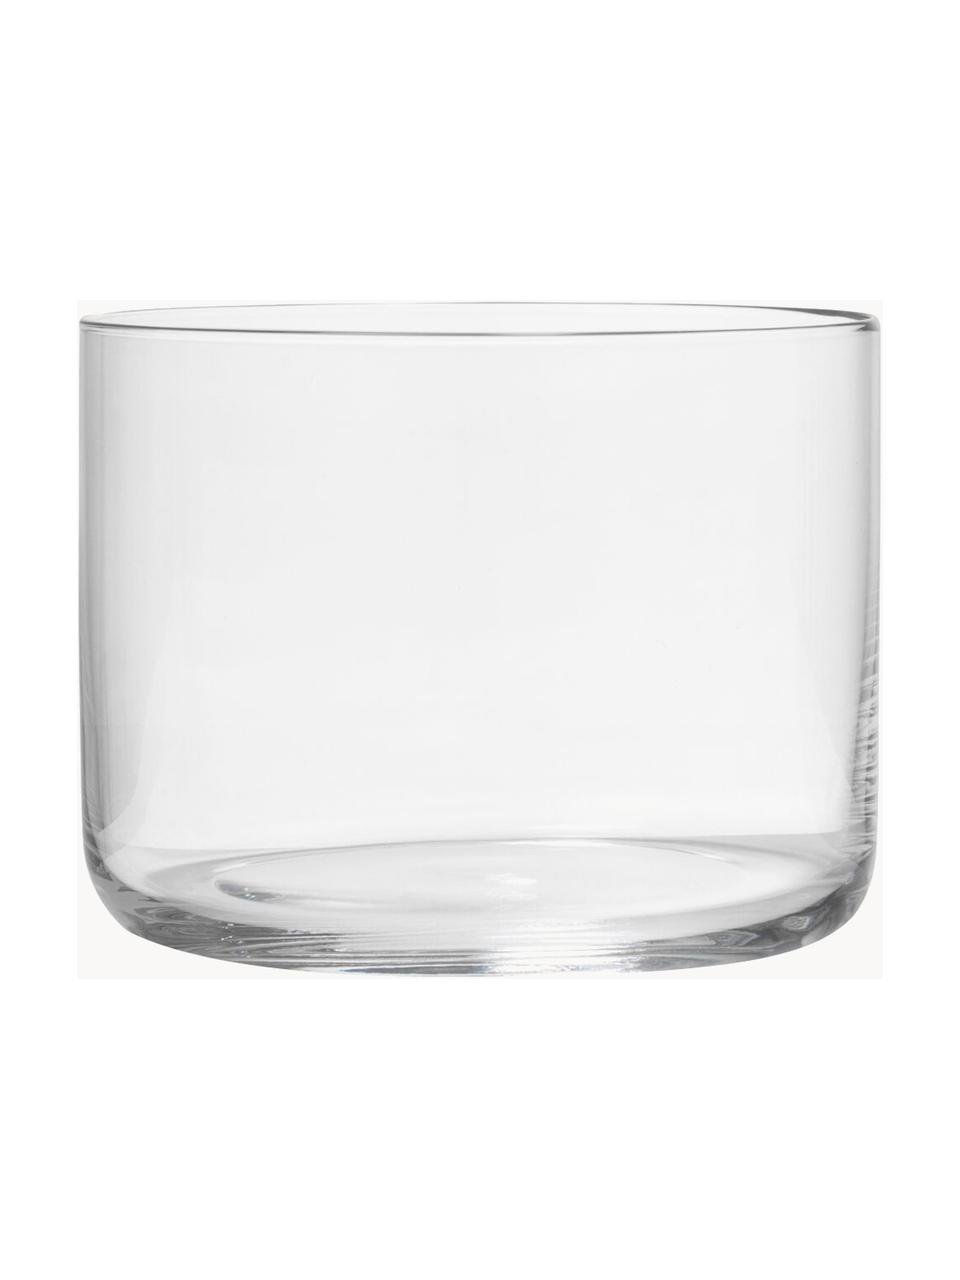 Súprava pohárov na vodu Nesting, 4 diely, Krištáľové sklo

Vneste lesk krištáľového skla na váš jedálenský stôl! Sklo je výnimočne priehľadné a ťažké, čo znamená, že pôsobí hodnotne a zároveň dobre vyzerá. Navyše jemné tvary robia z každého kusu špeciálny kúsok, ktorý je praktický aj krásny., Priehľadná, Súprava s rôznymi veľkosťami